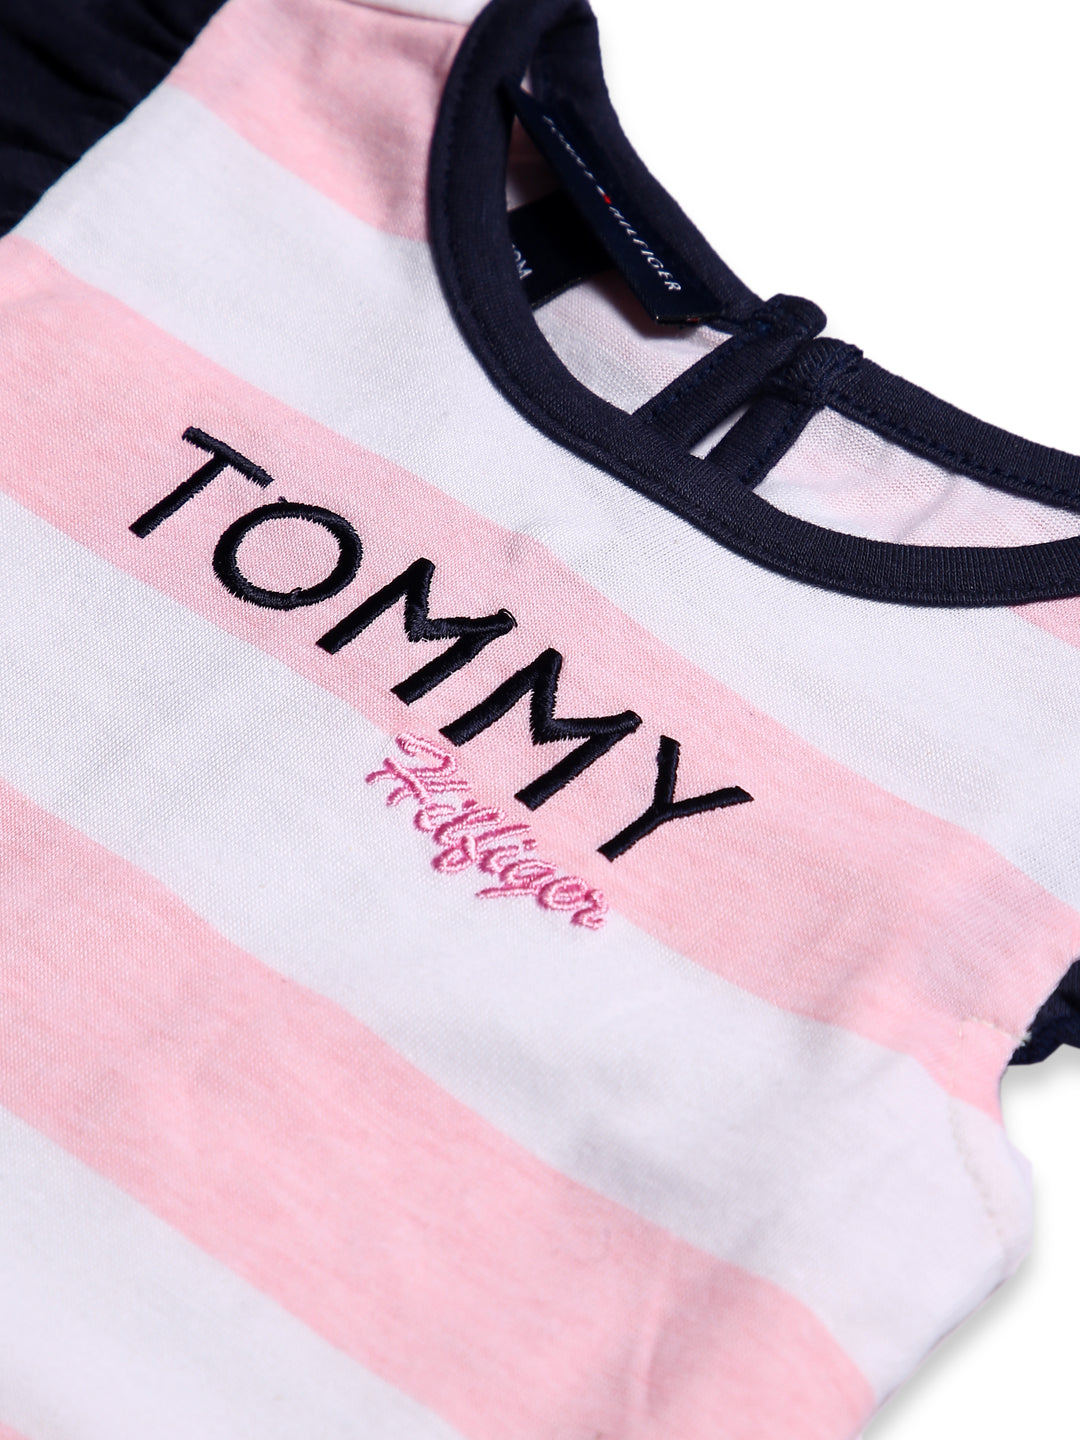 Tommy Hilfiger Girls H/S Cotton Tight Suit 2Pcs #BD-7 (S-23)